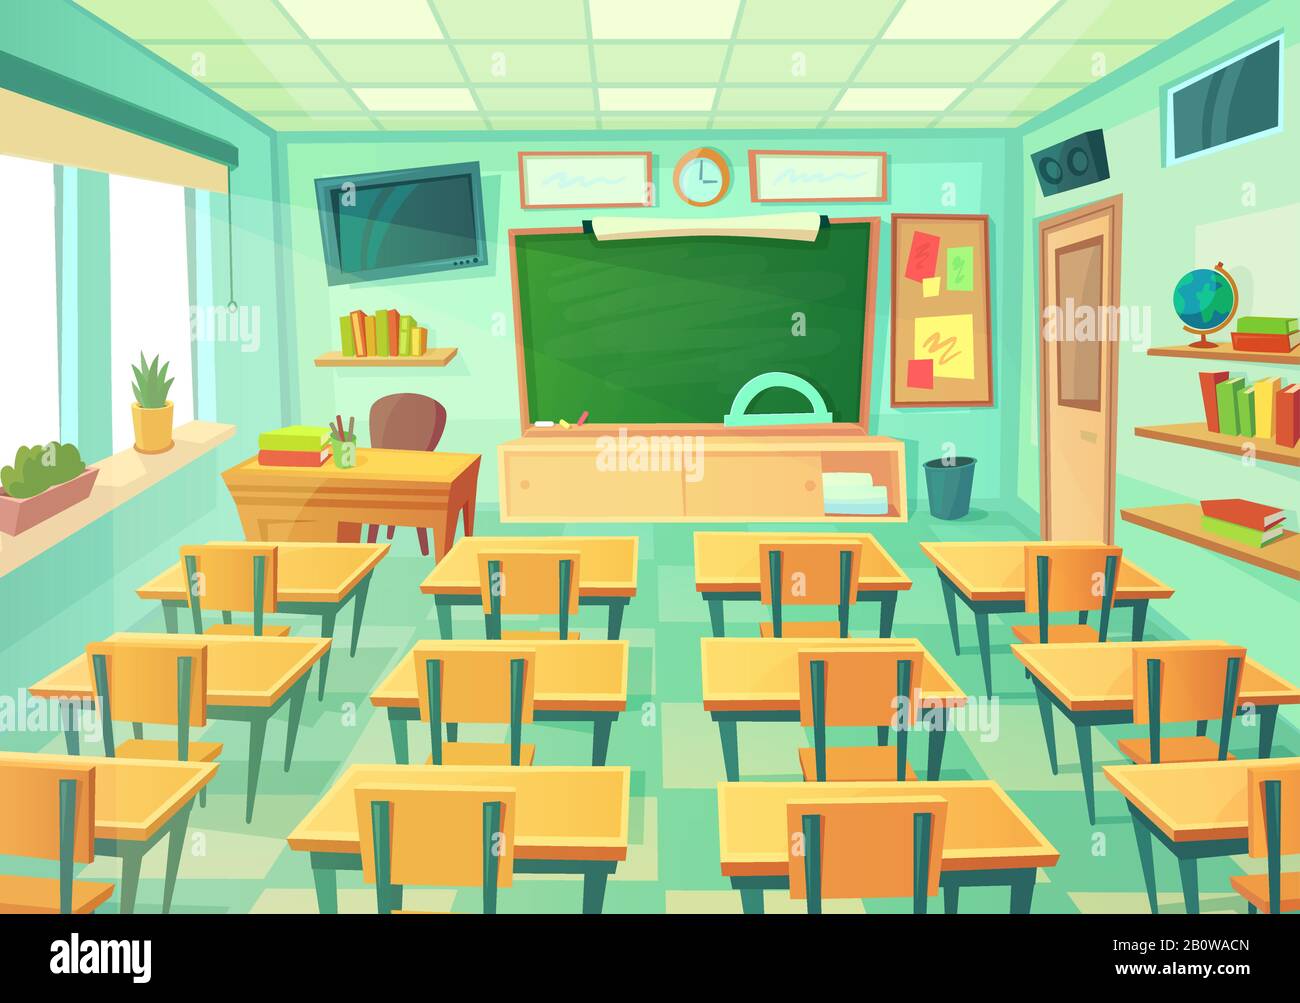 Aula de dibujos animados vacía. Sala de la escuela con pizarra de clase y escritorios. Modernas clases matemáticas interiores ilustración vectorial Ilustración del Vector